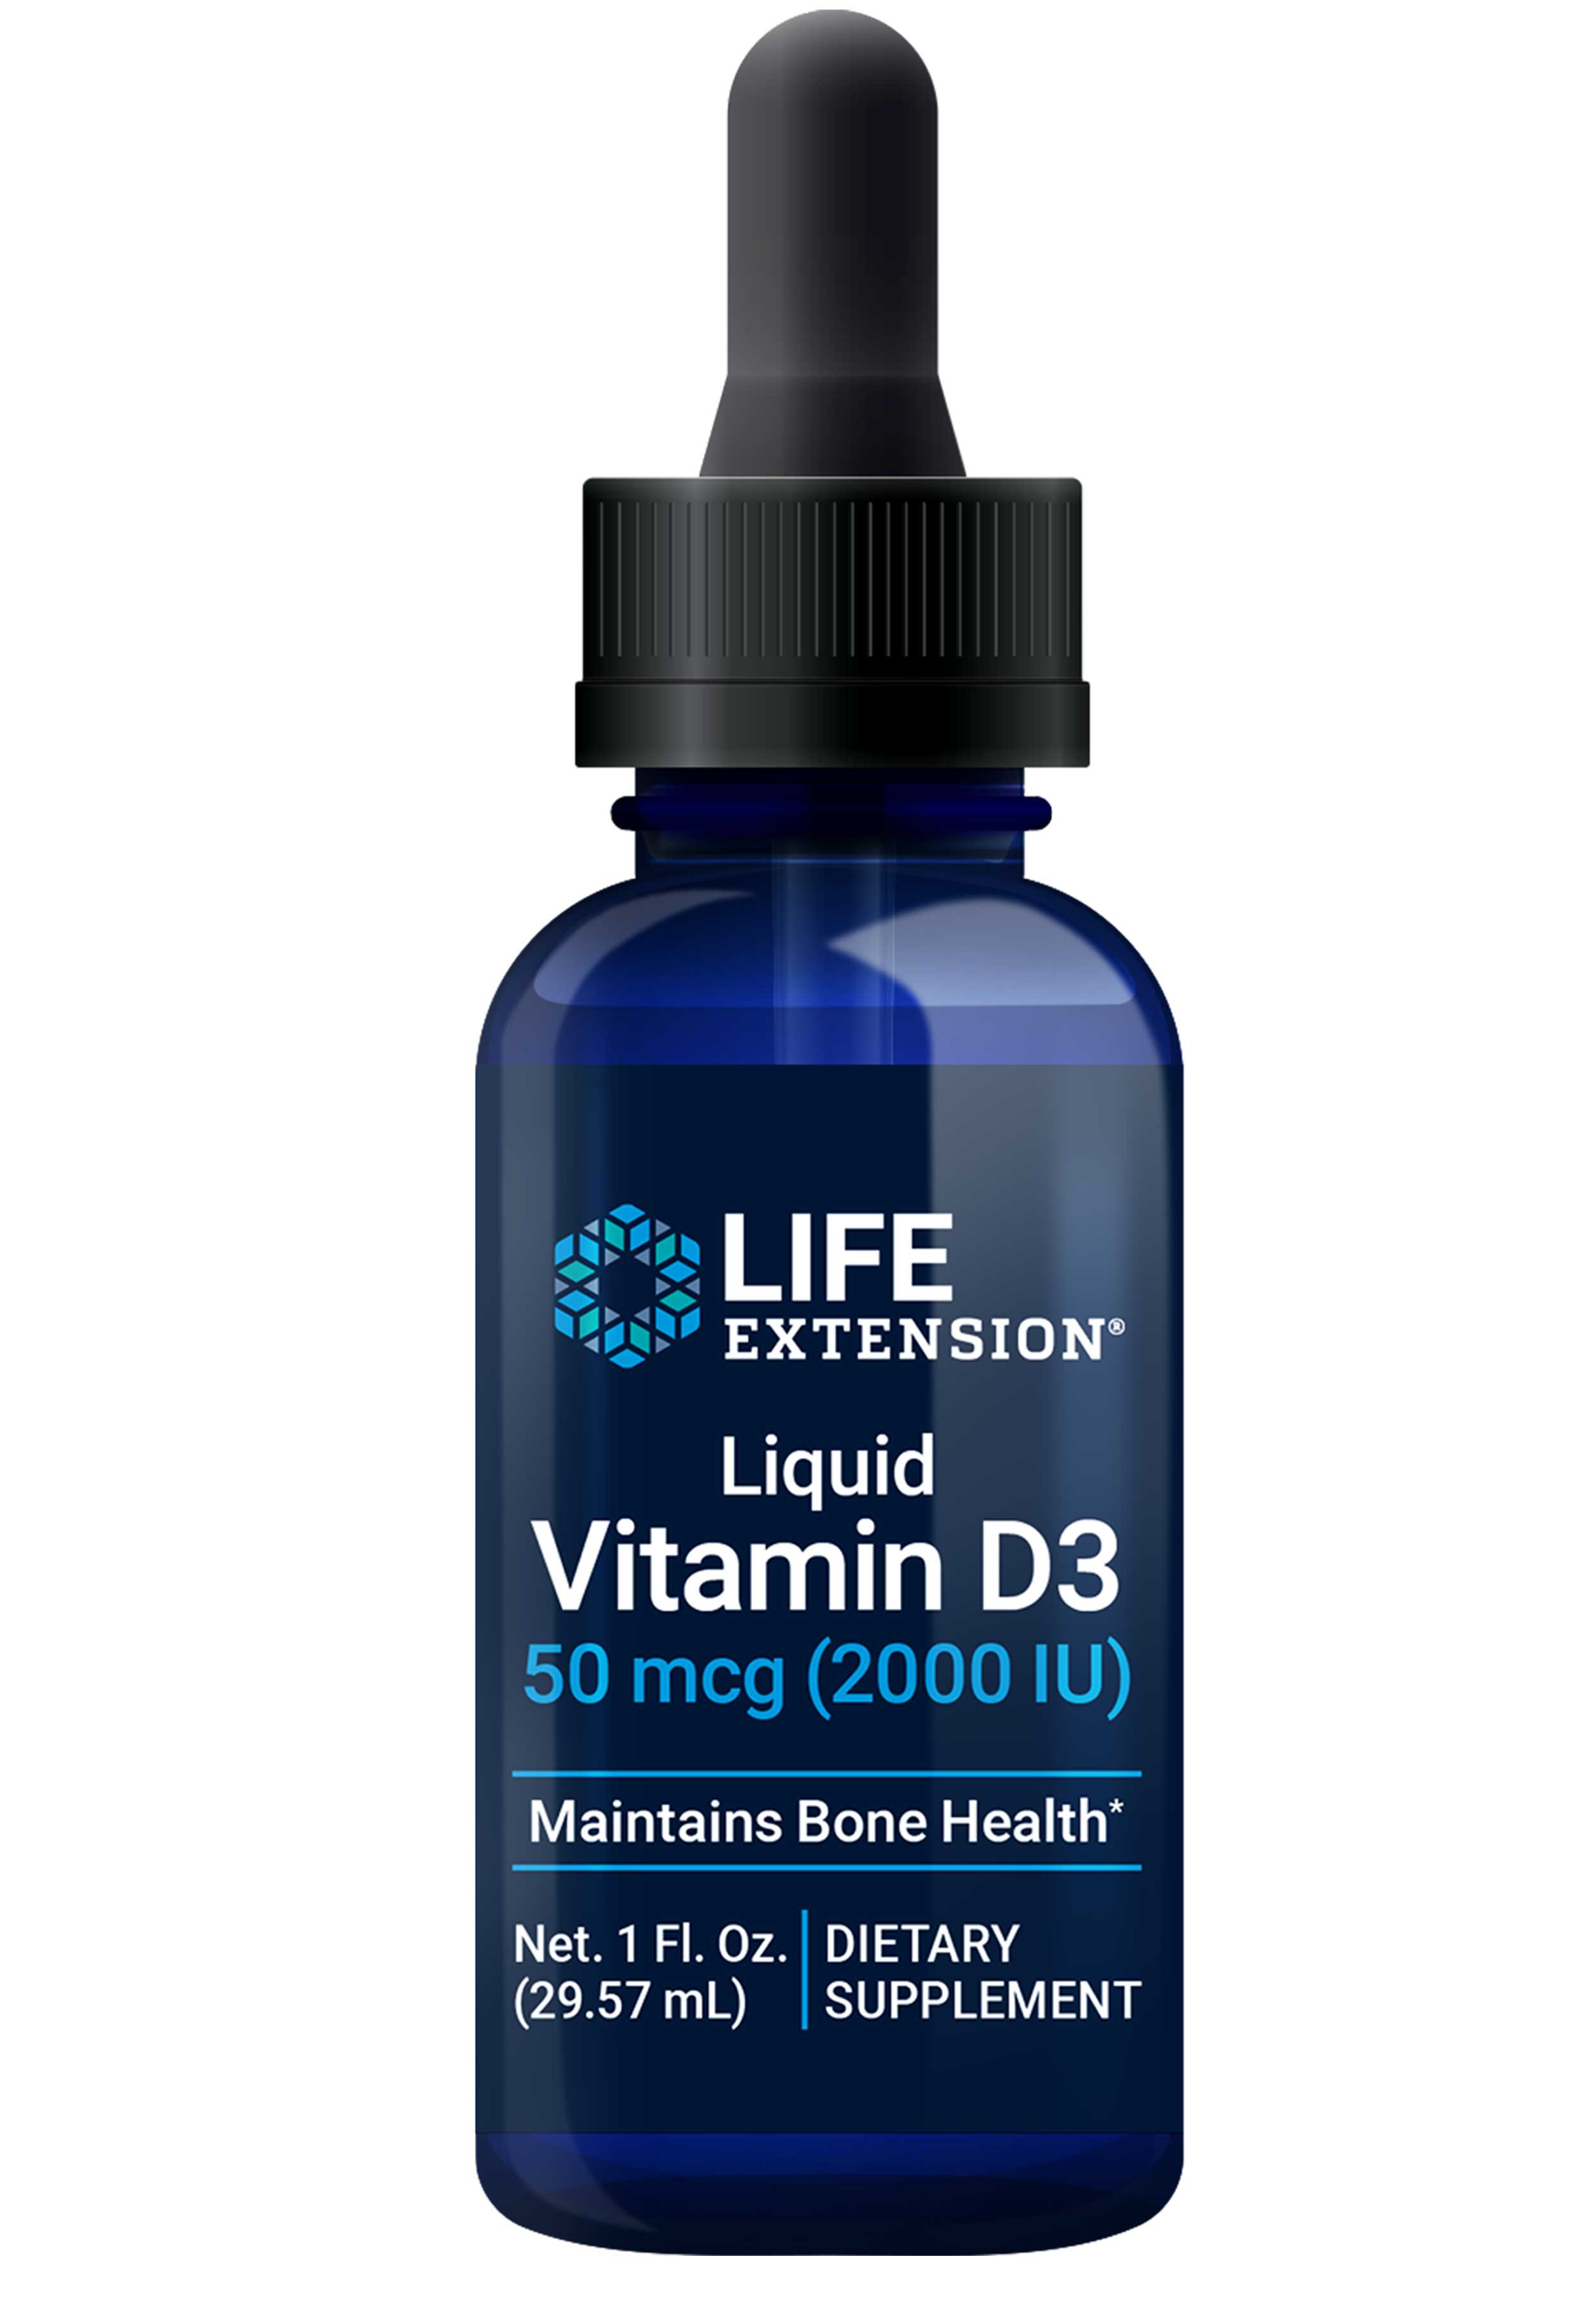 Life Extension Liquid Vitamin D3